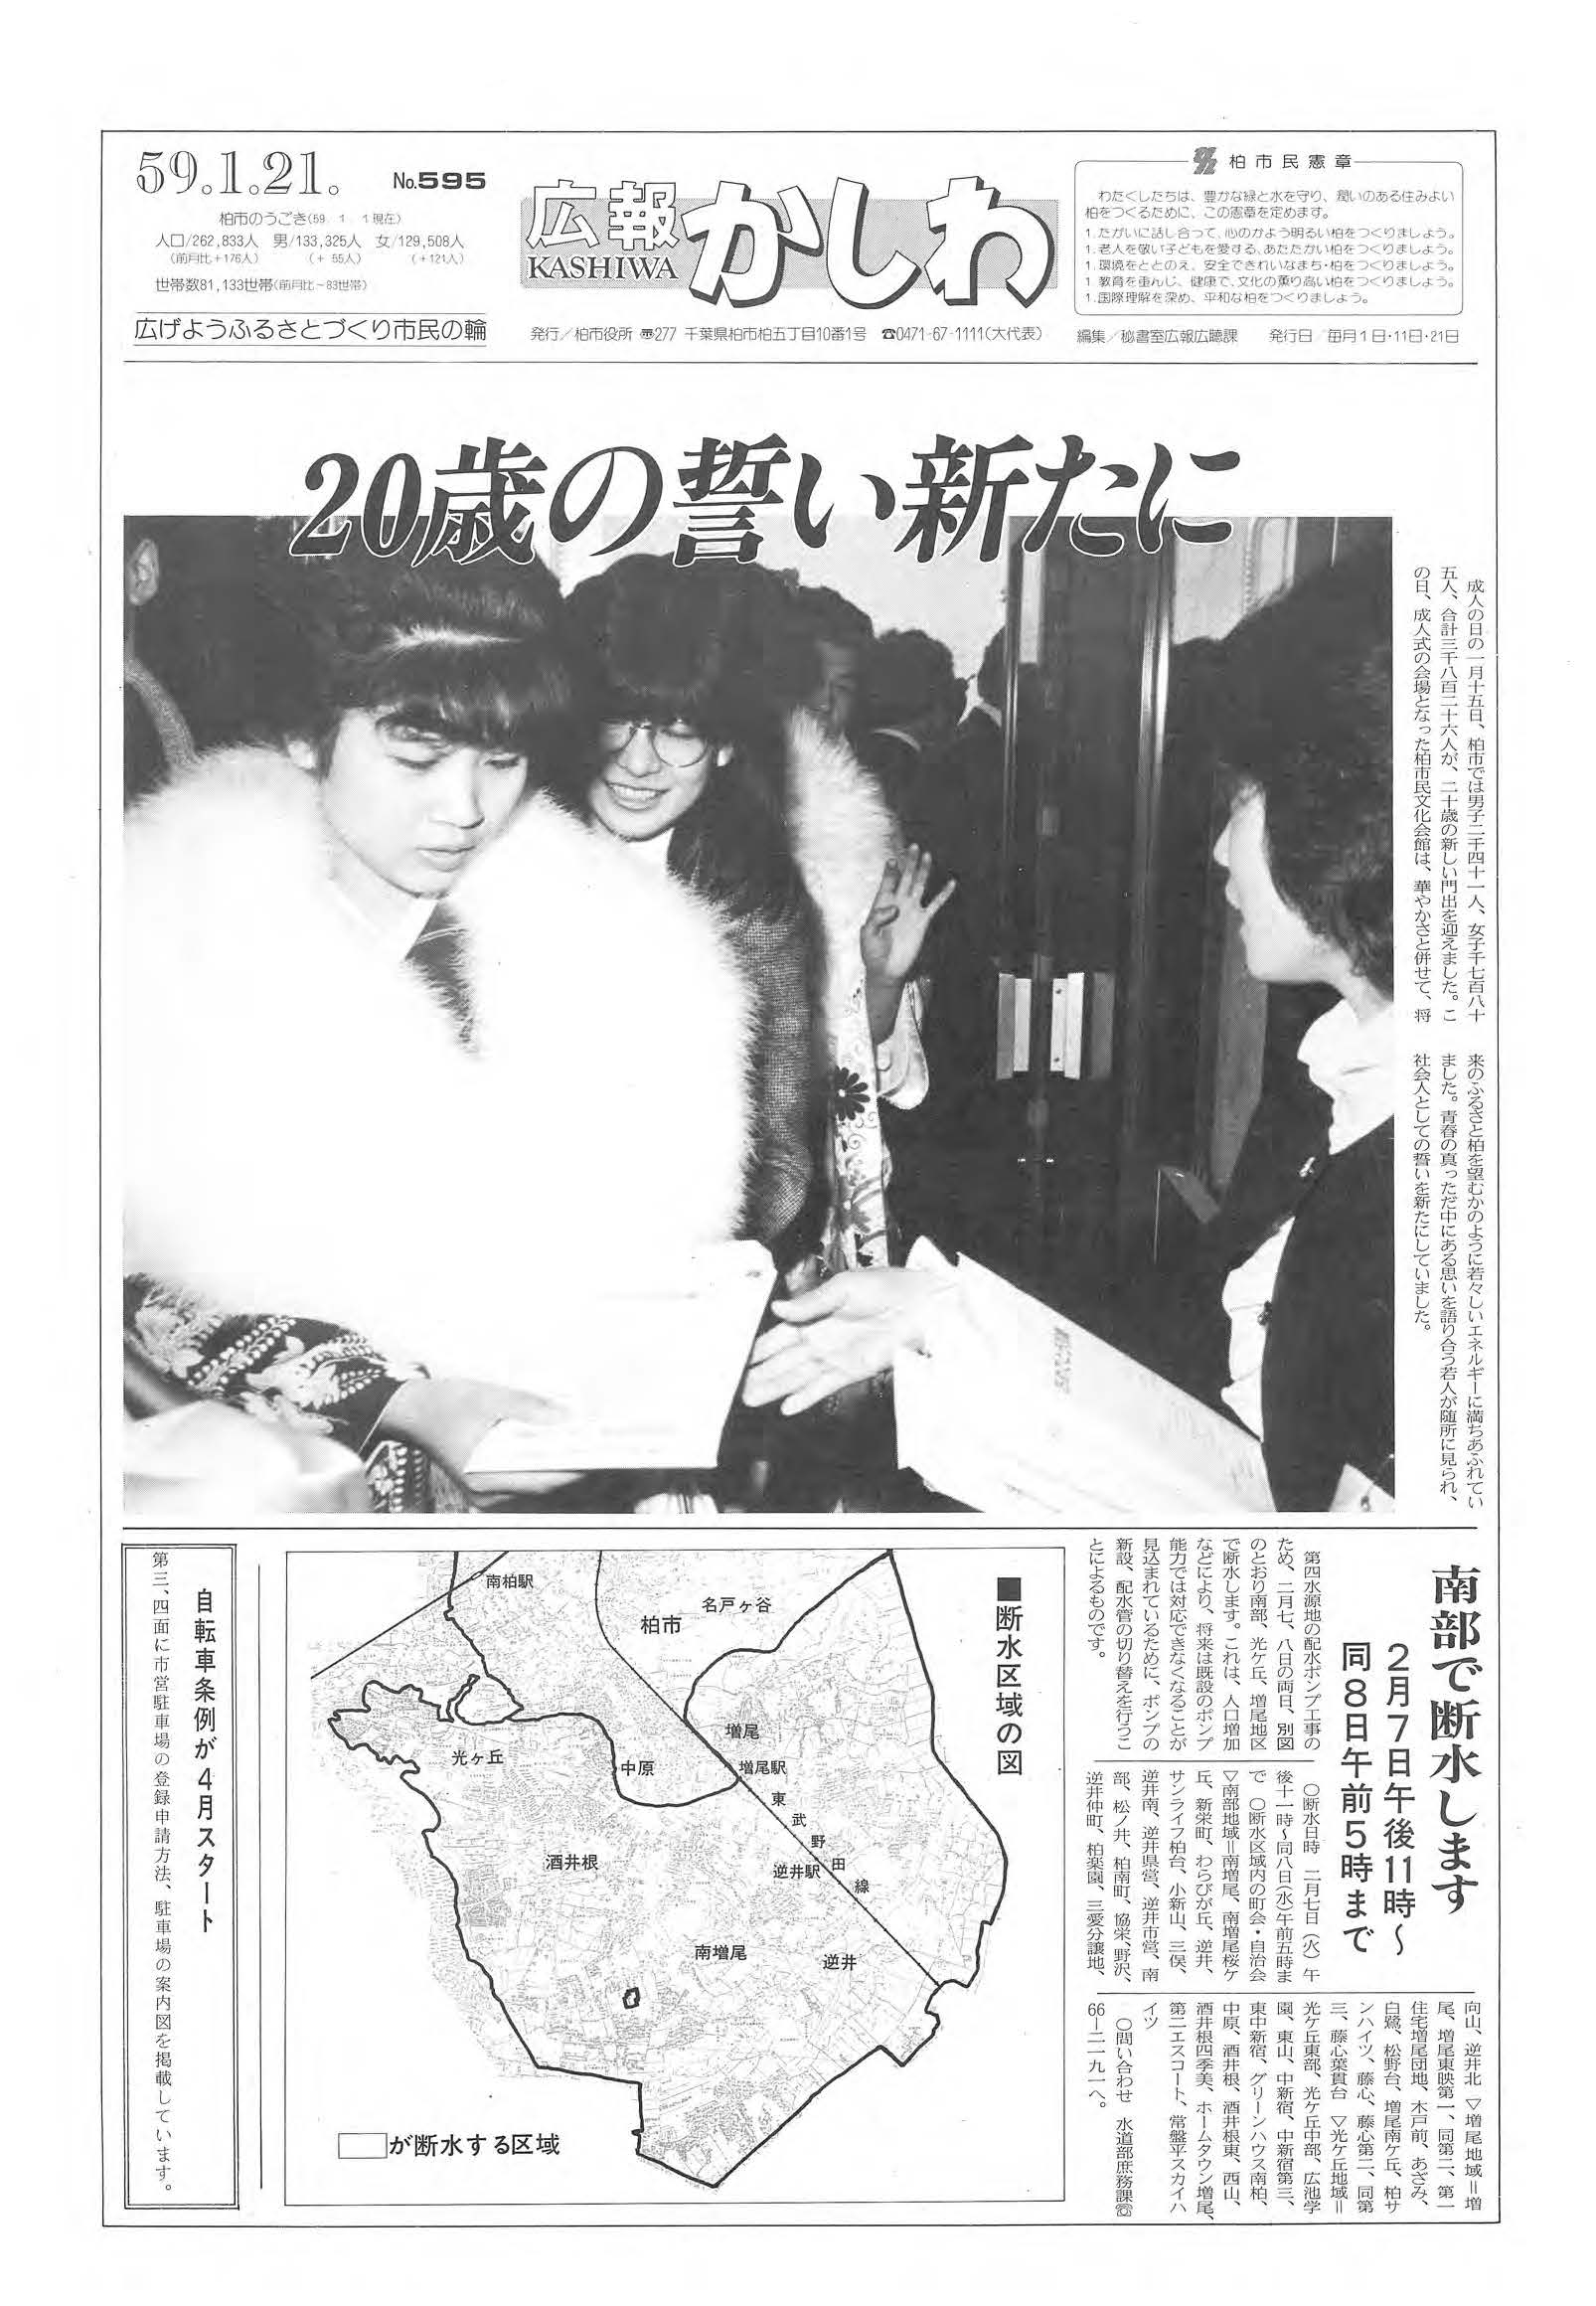 広報かしわ　昭和59年1月21日発行　595号